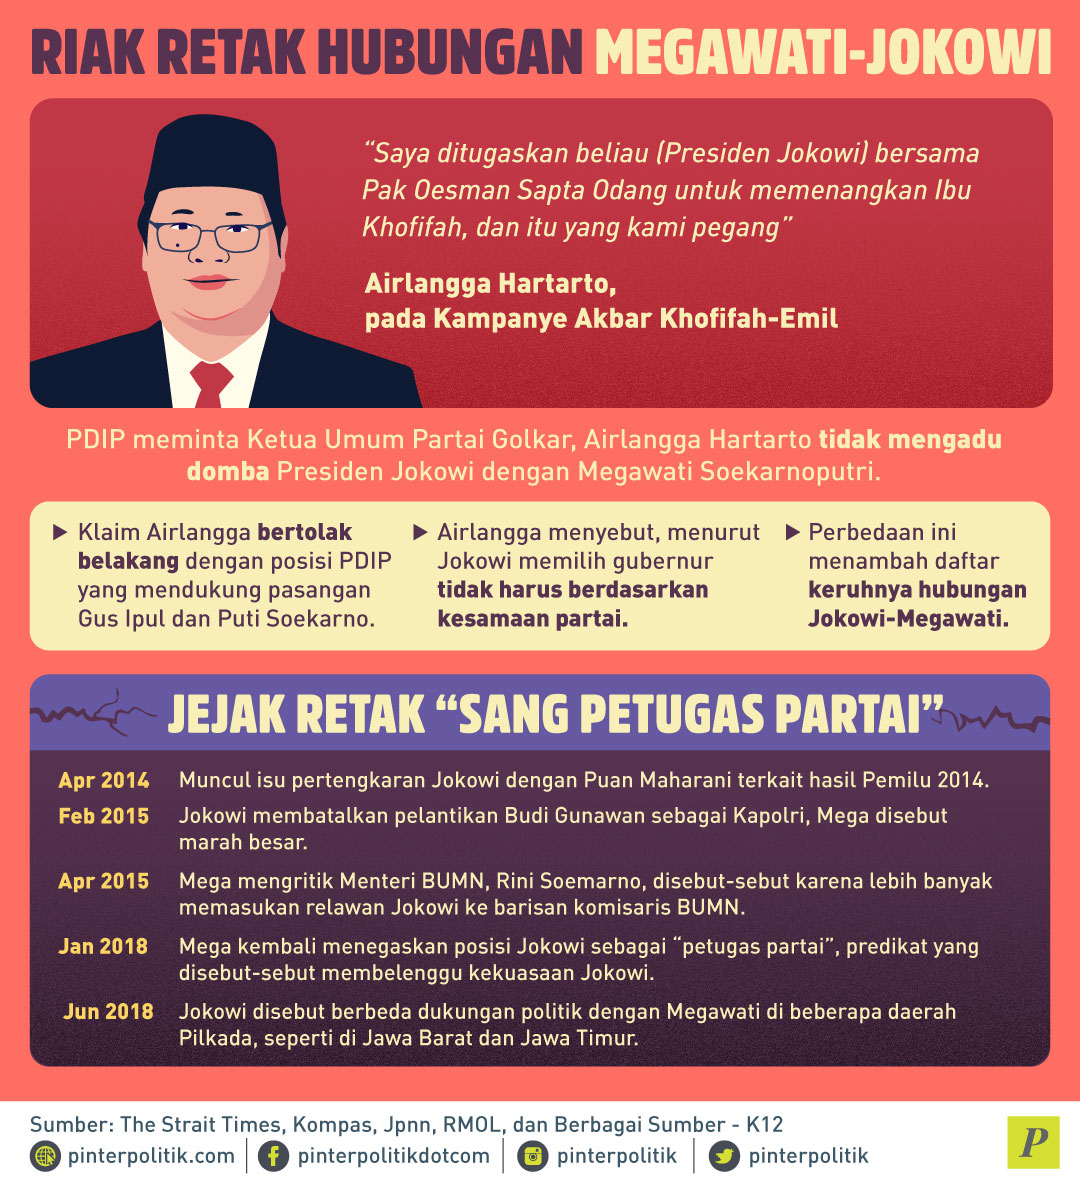 Riak Retak Jokowi-Megawati